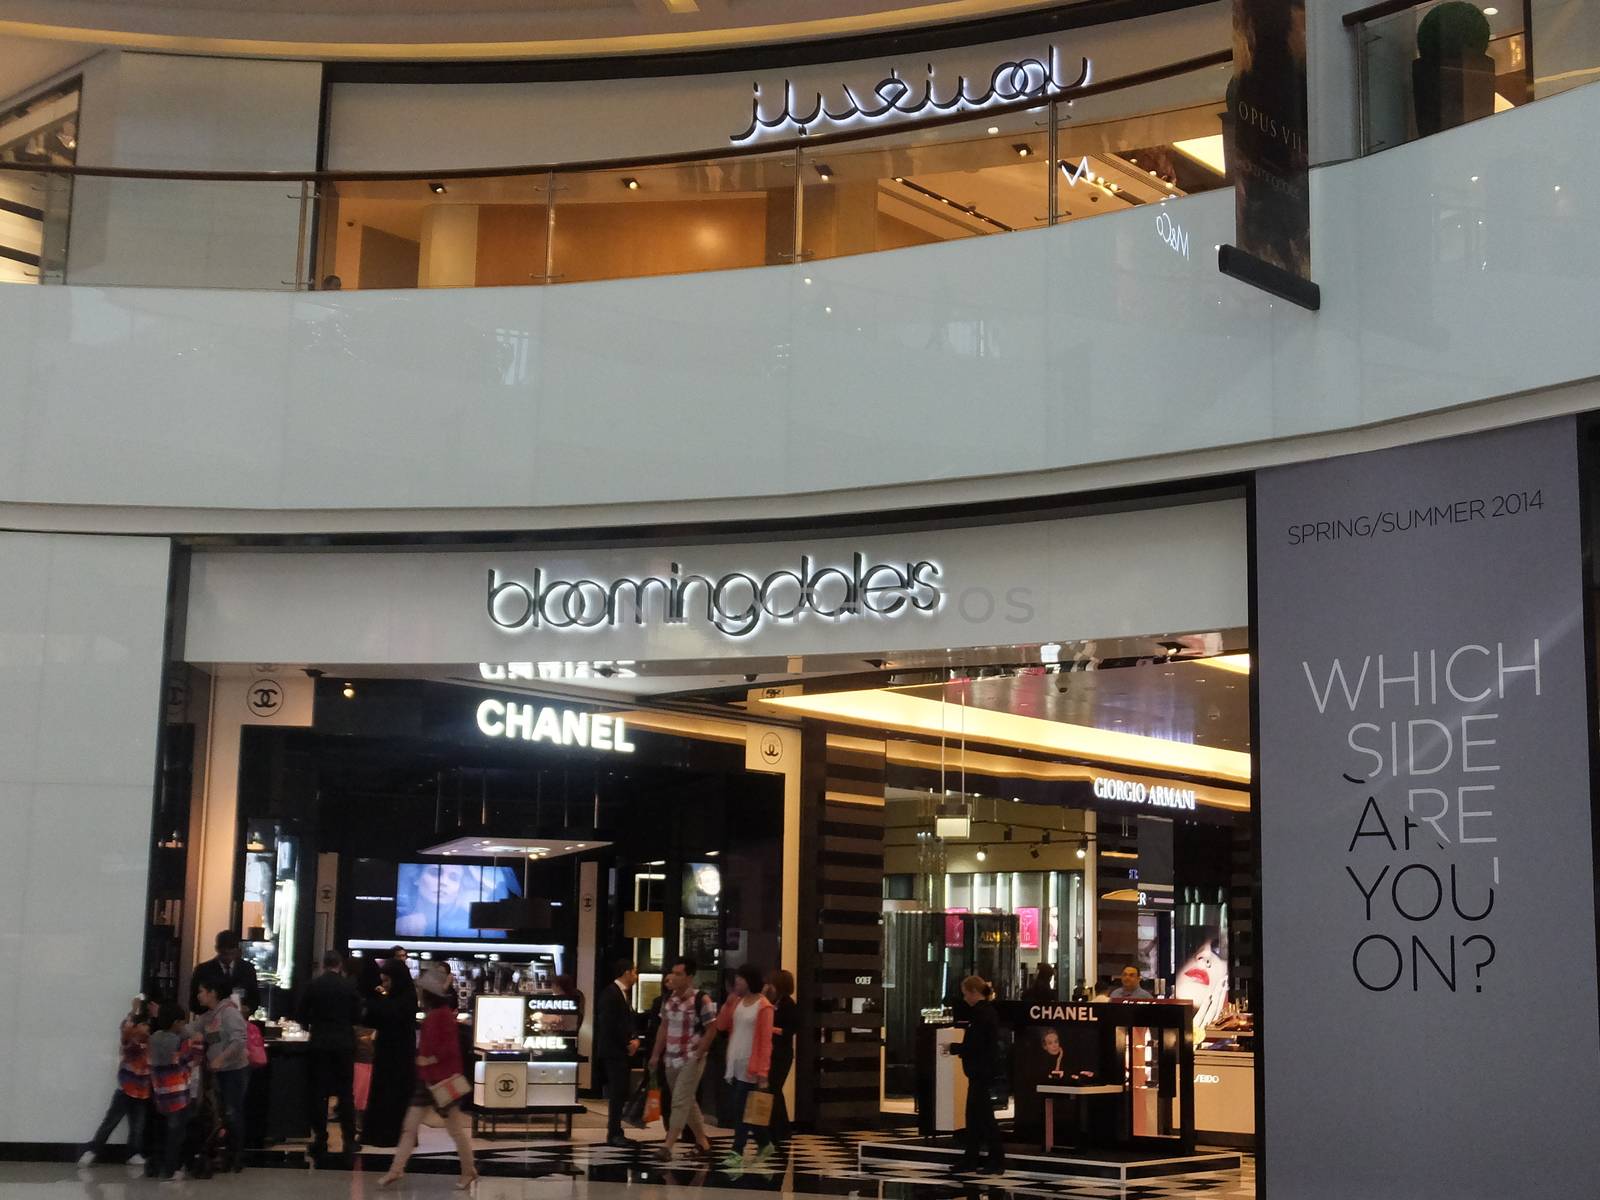 Bloomingdales at Dubai Mall in Dubai, UAE by sainaniritu